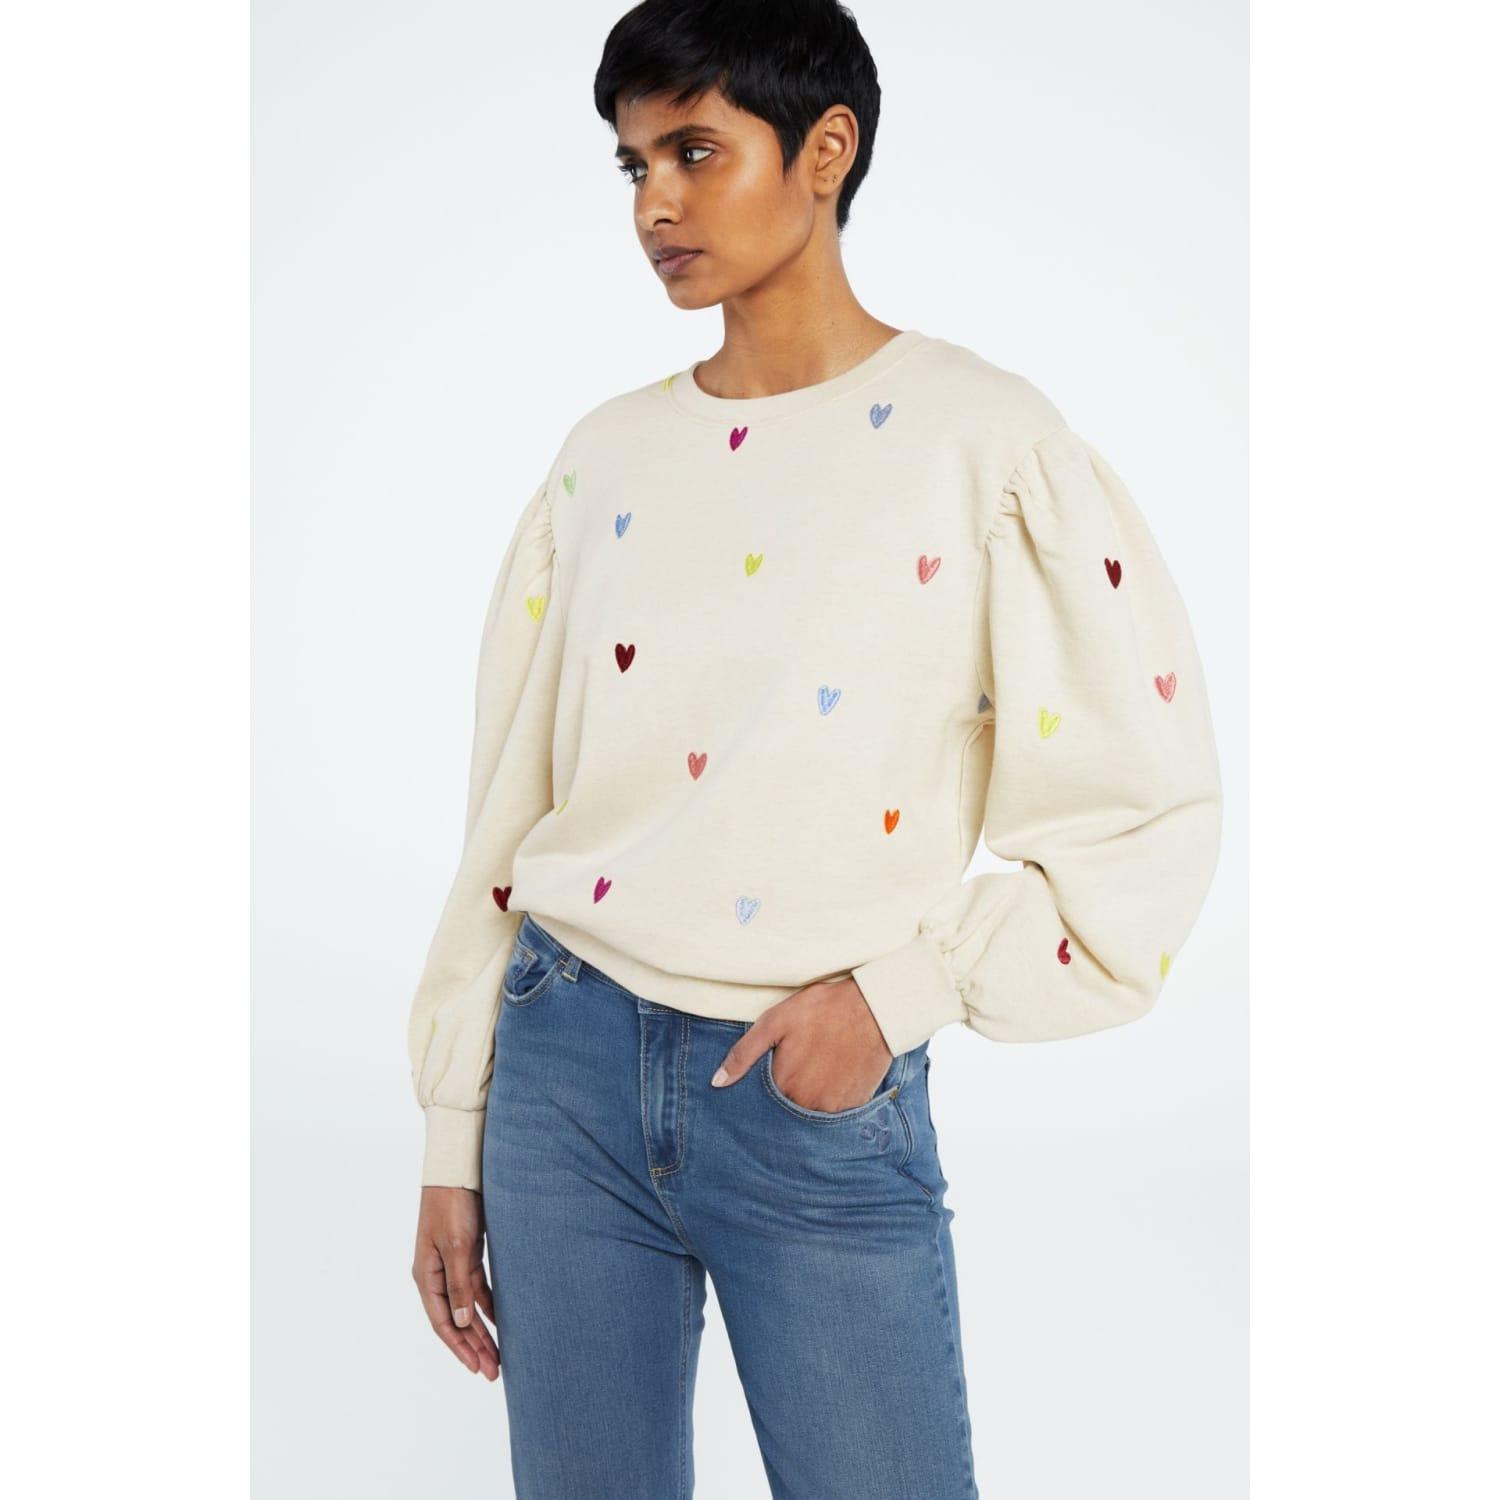 FABIENNE CHAPOT Lin Sweater in White | Lyst UK